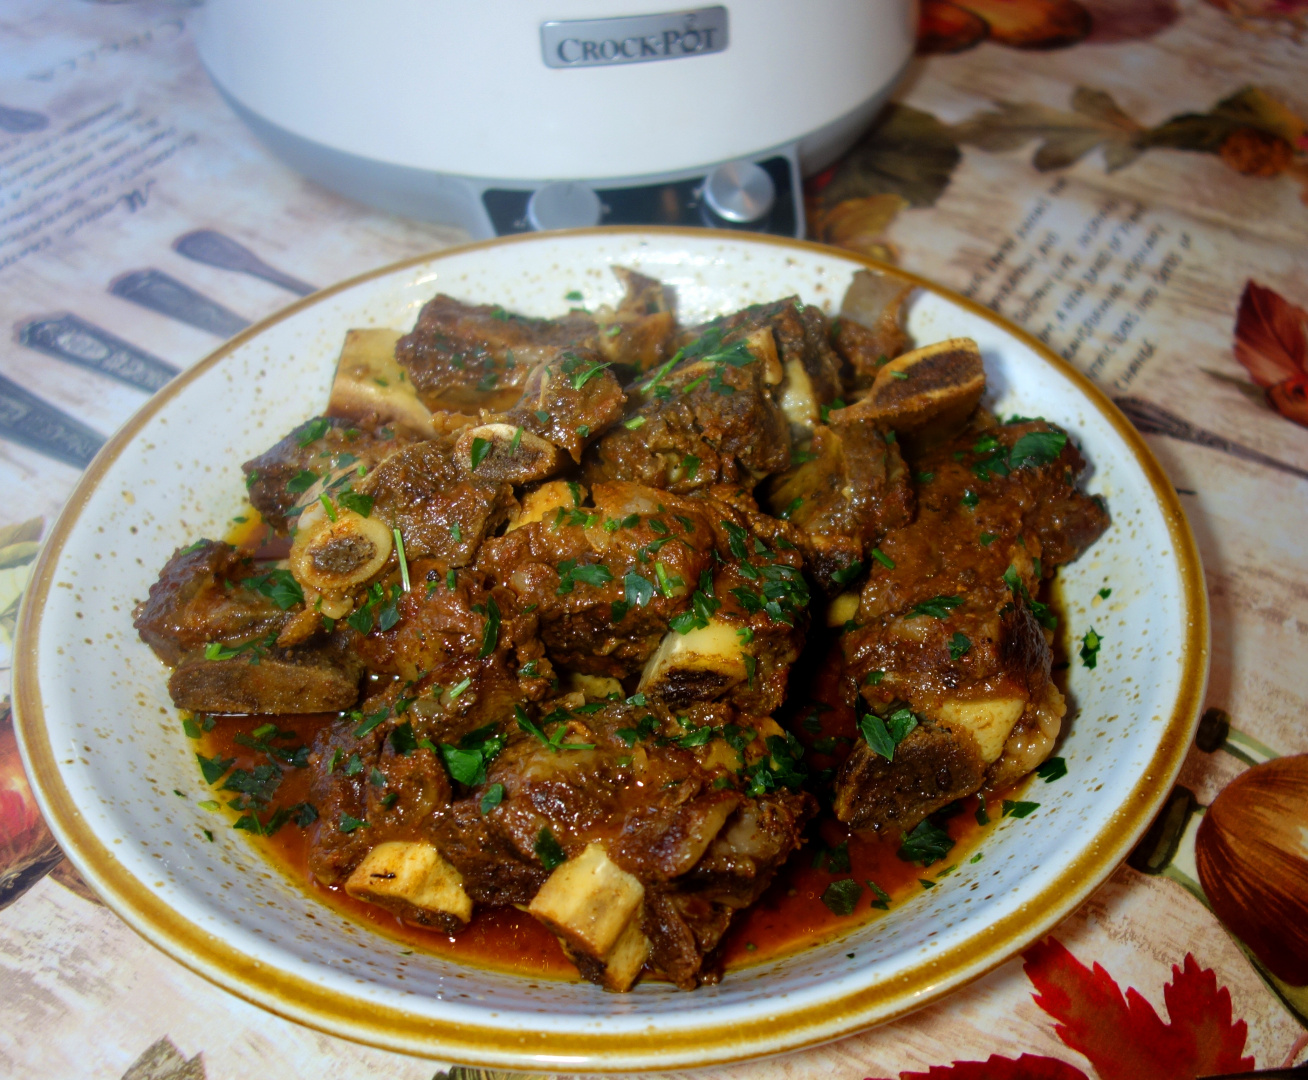 Short ribs - Costite de vita glazurate la slow cooker Crock Pot